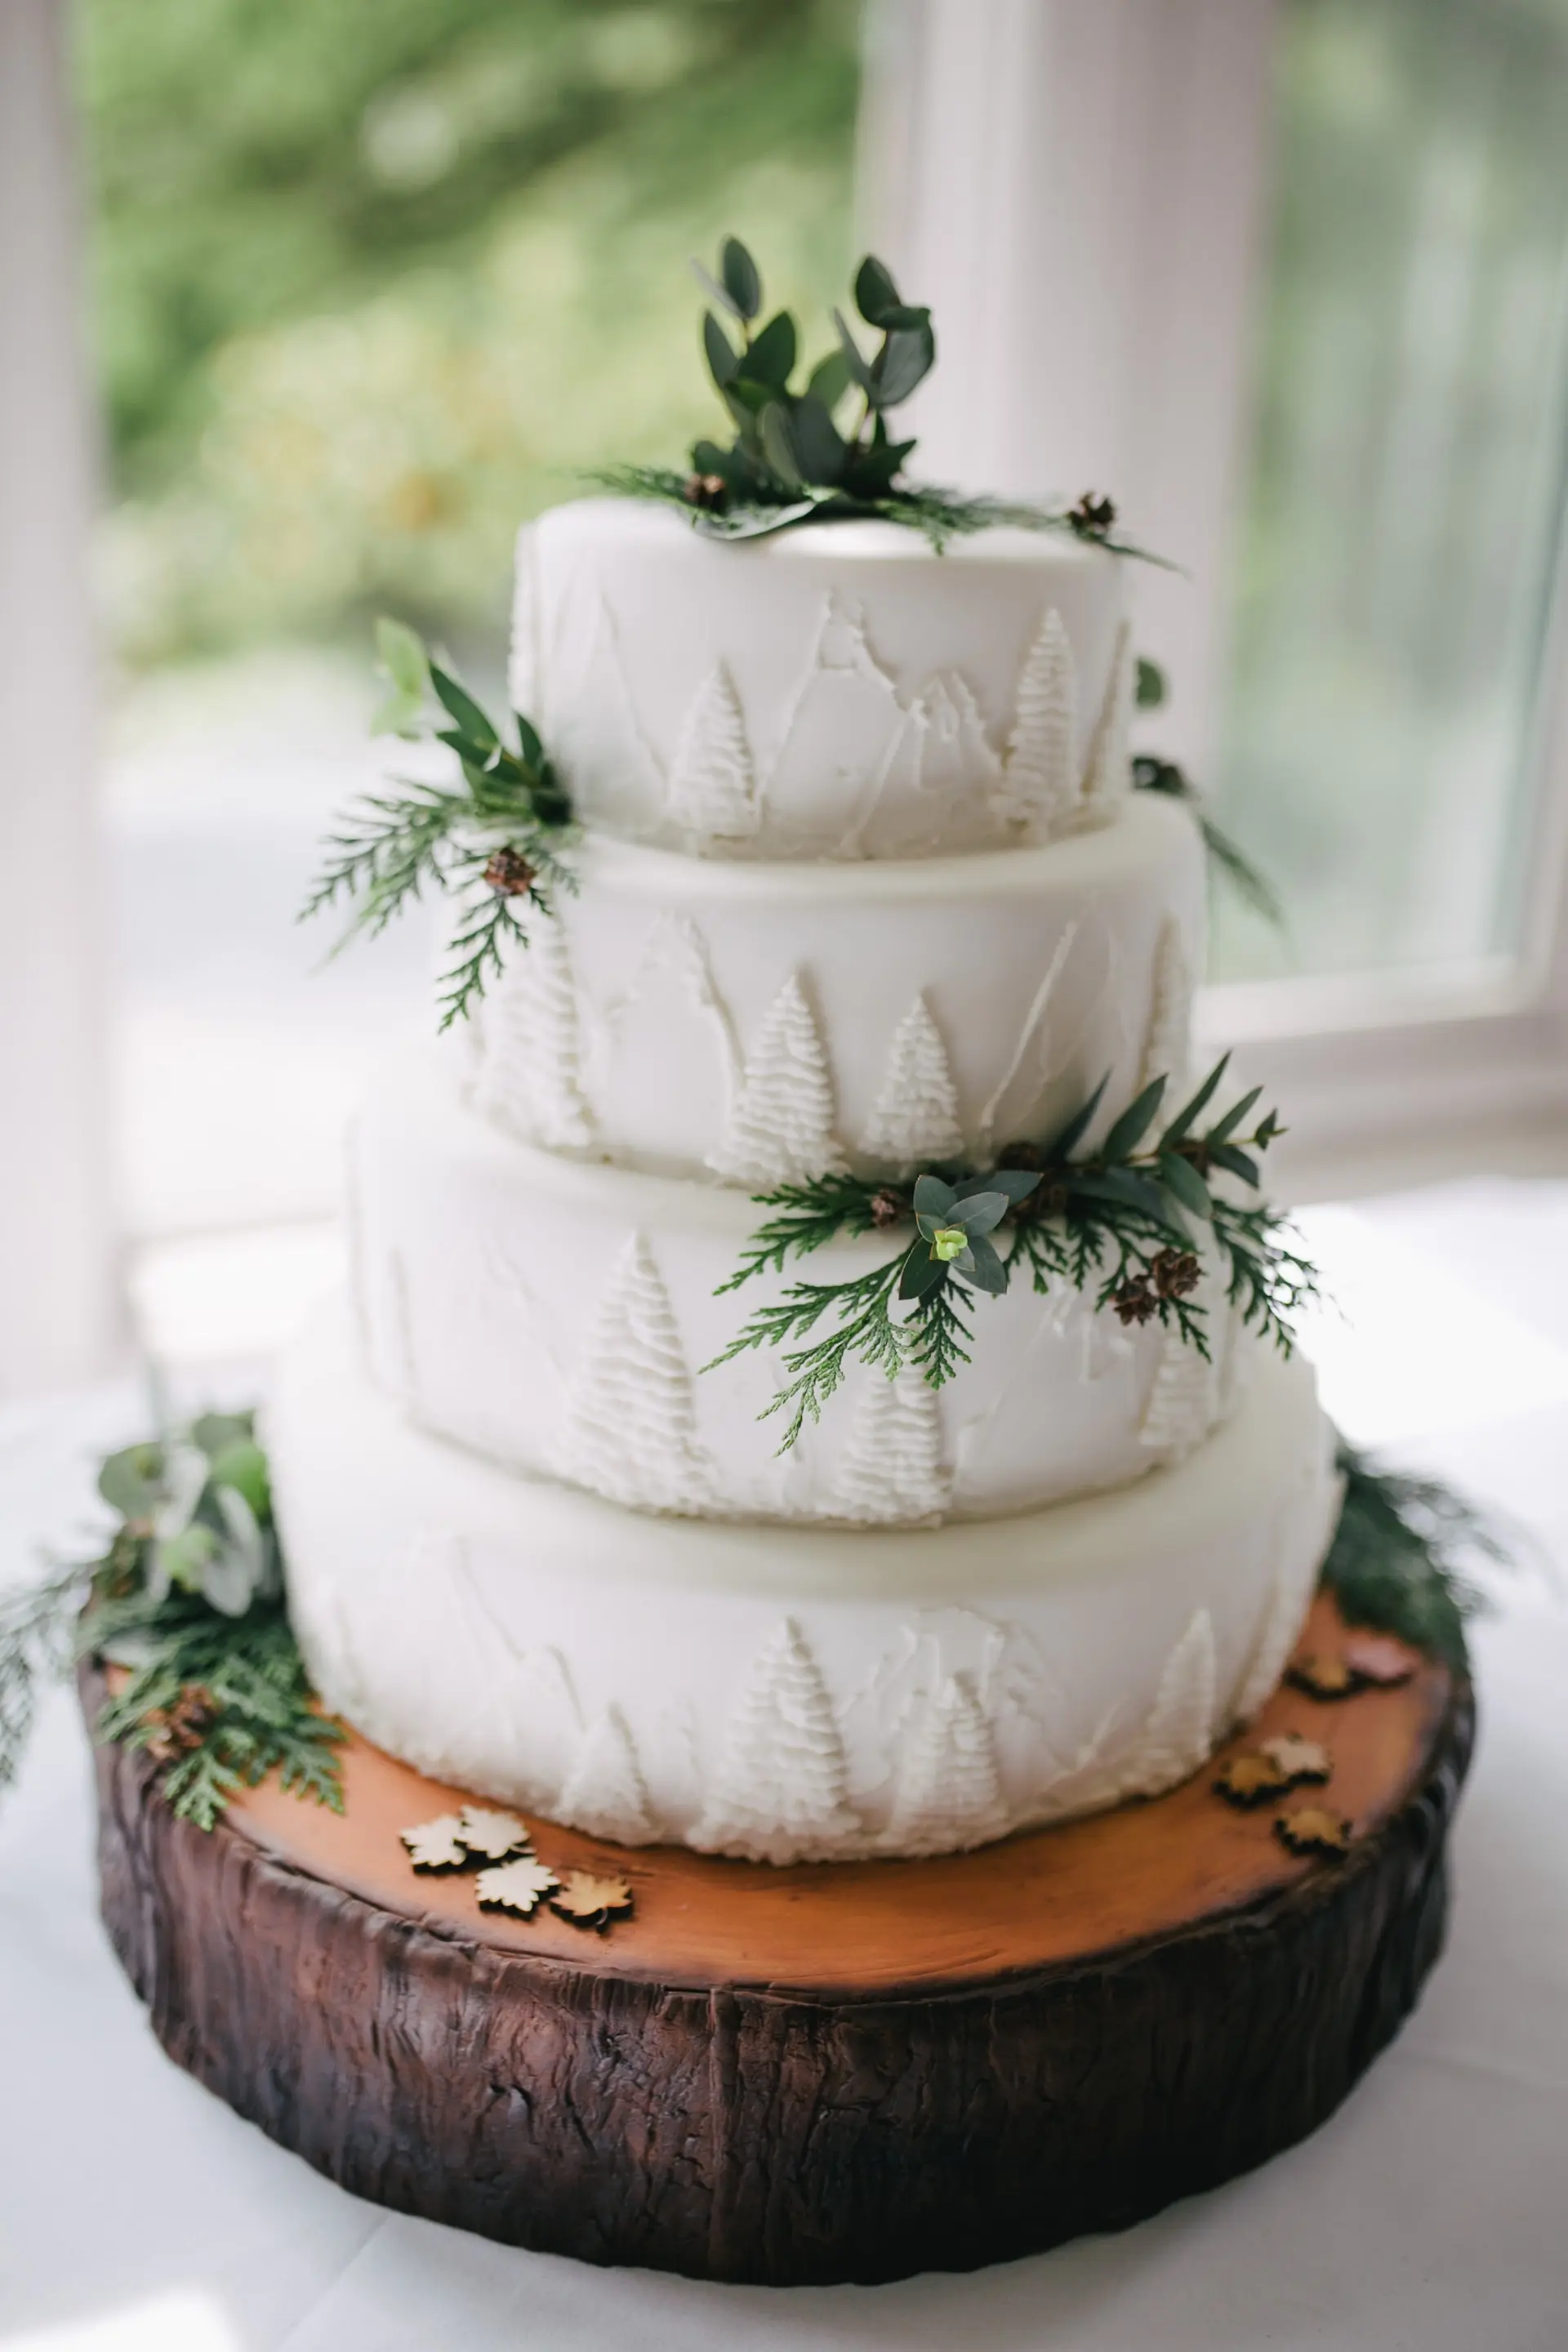 kue pernikahan sederhana tapi elegan